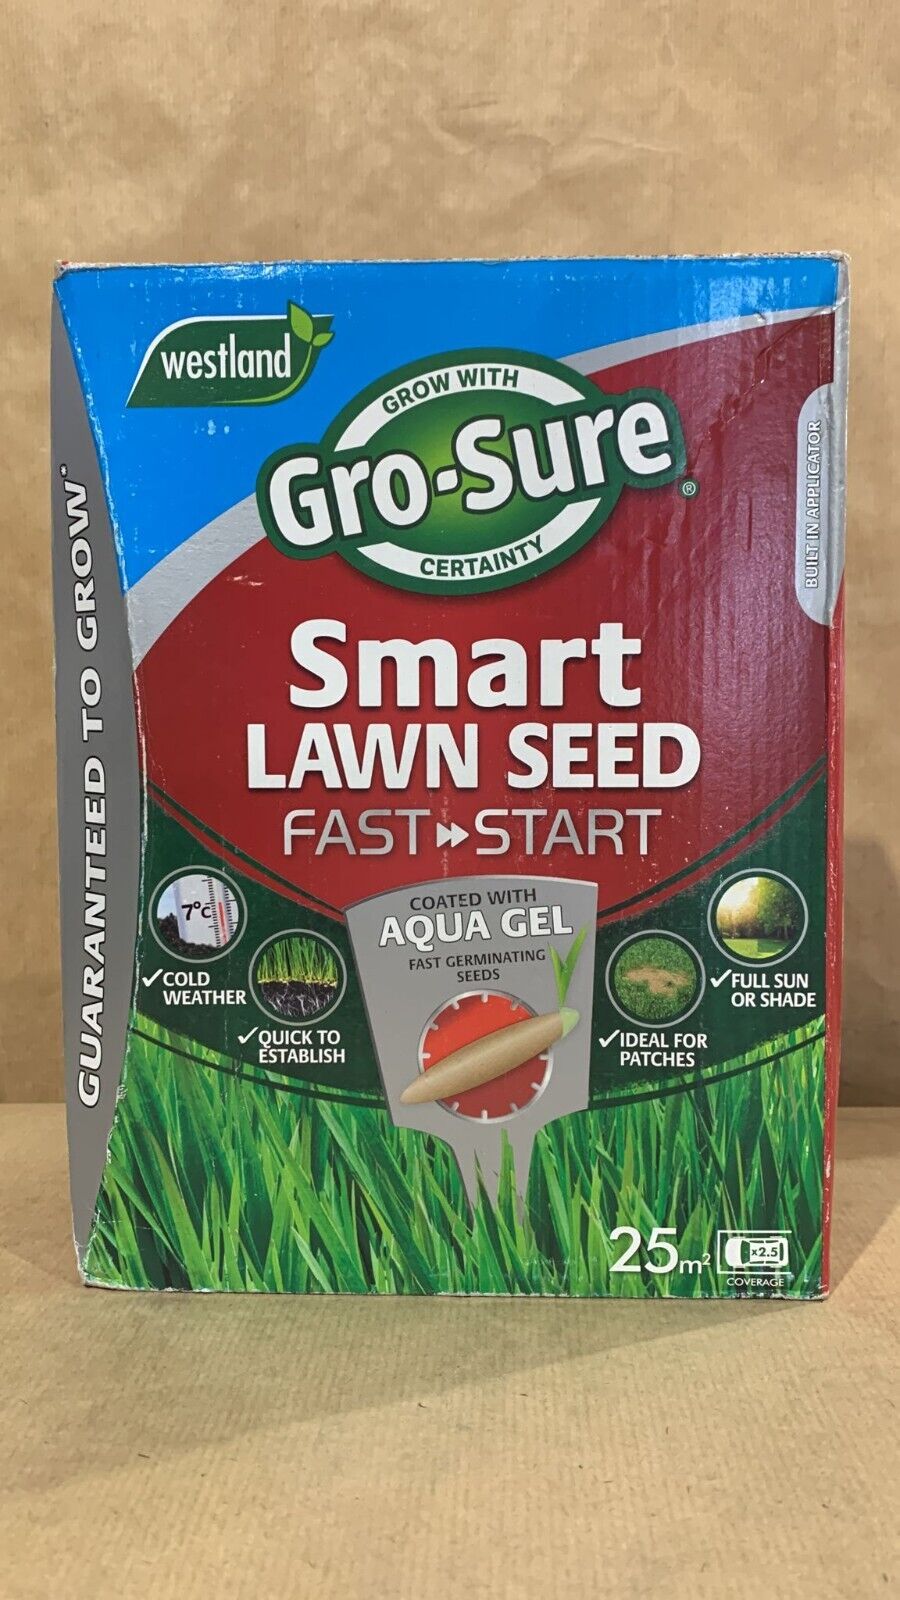 Gro-Sure Lawn fertiliser 25m² 1kg 7828